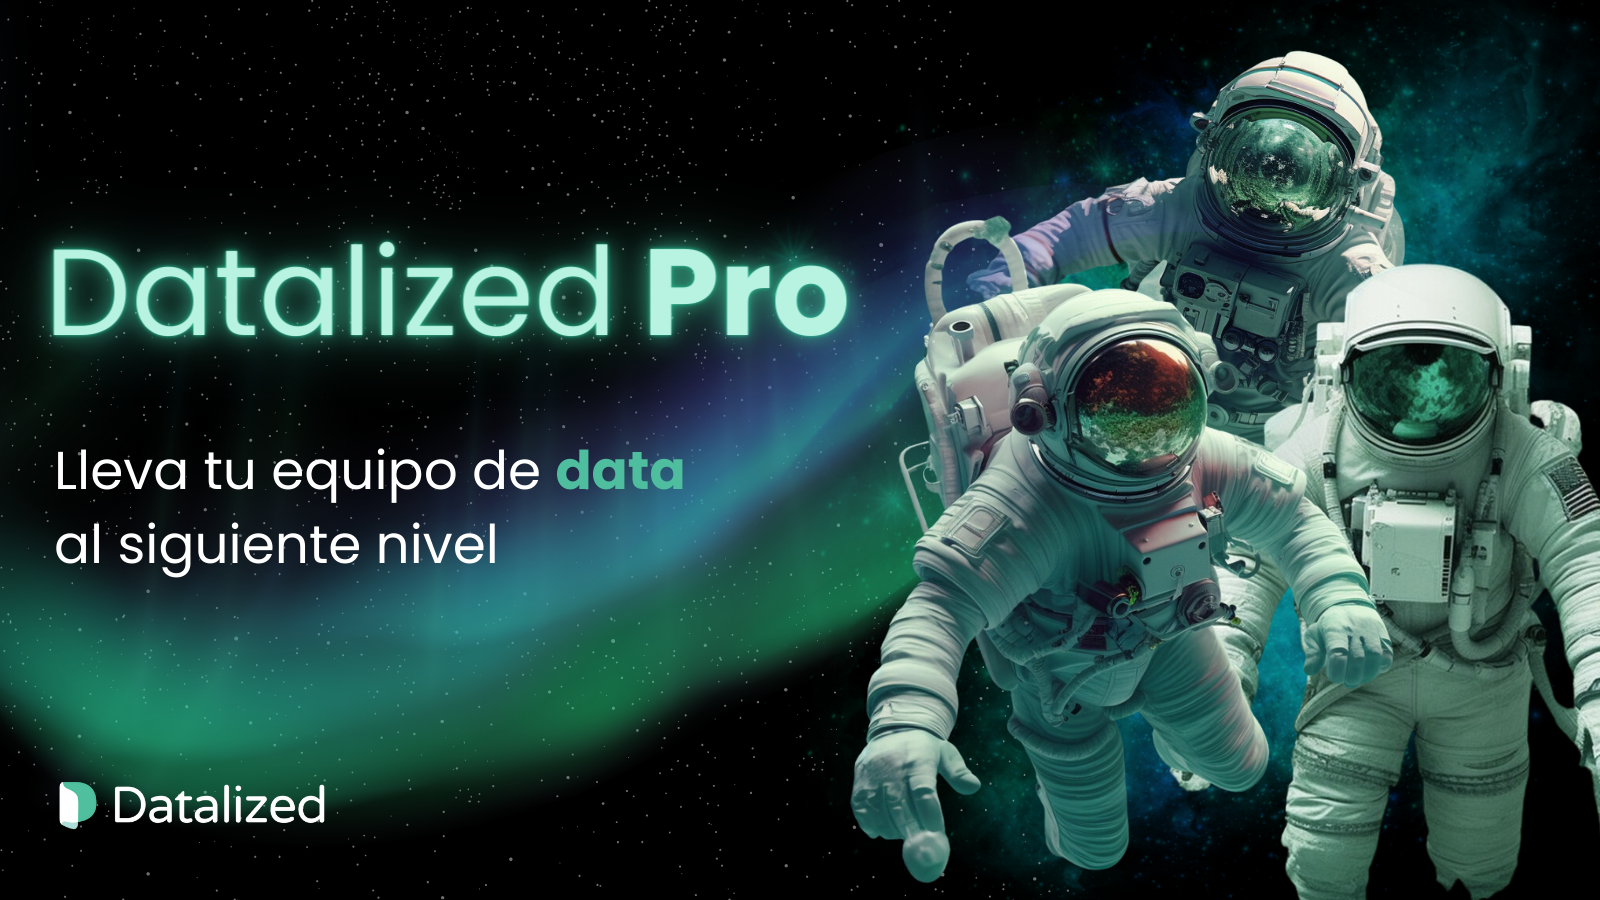 Lleva tu equipo de data al siguiente nivel con Datalized Pro